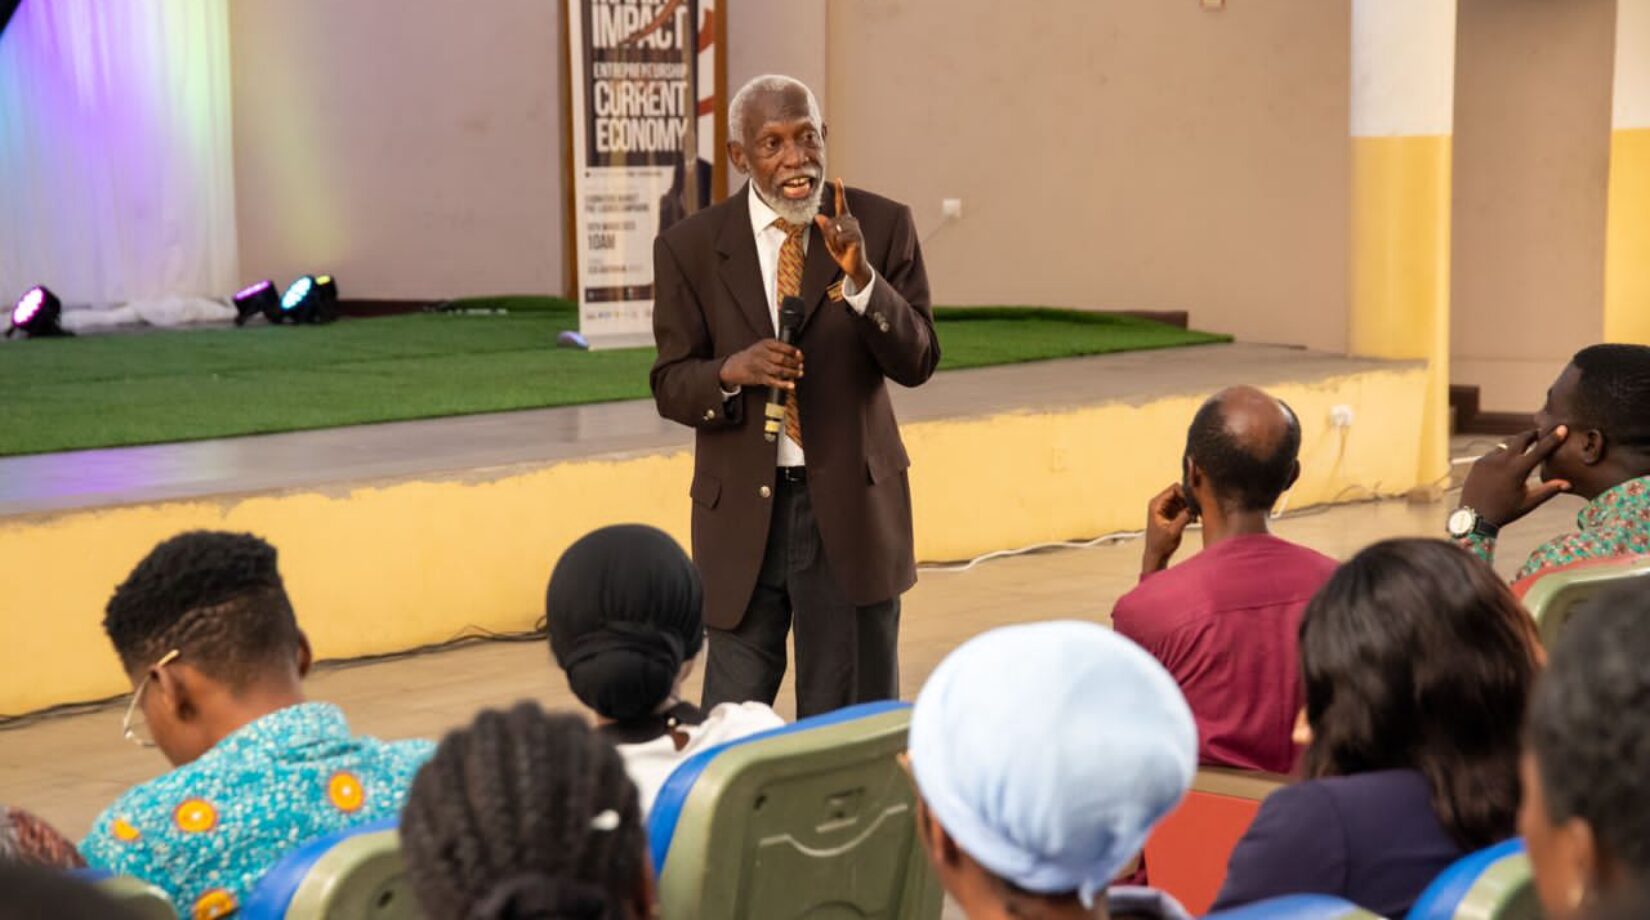 Current economic crisis calls for entrepreneurial investment-Prof. Adei